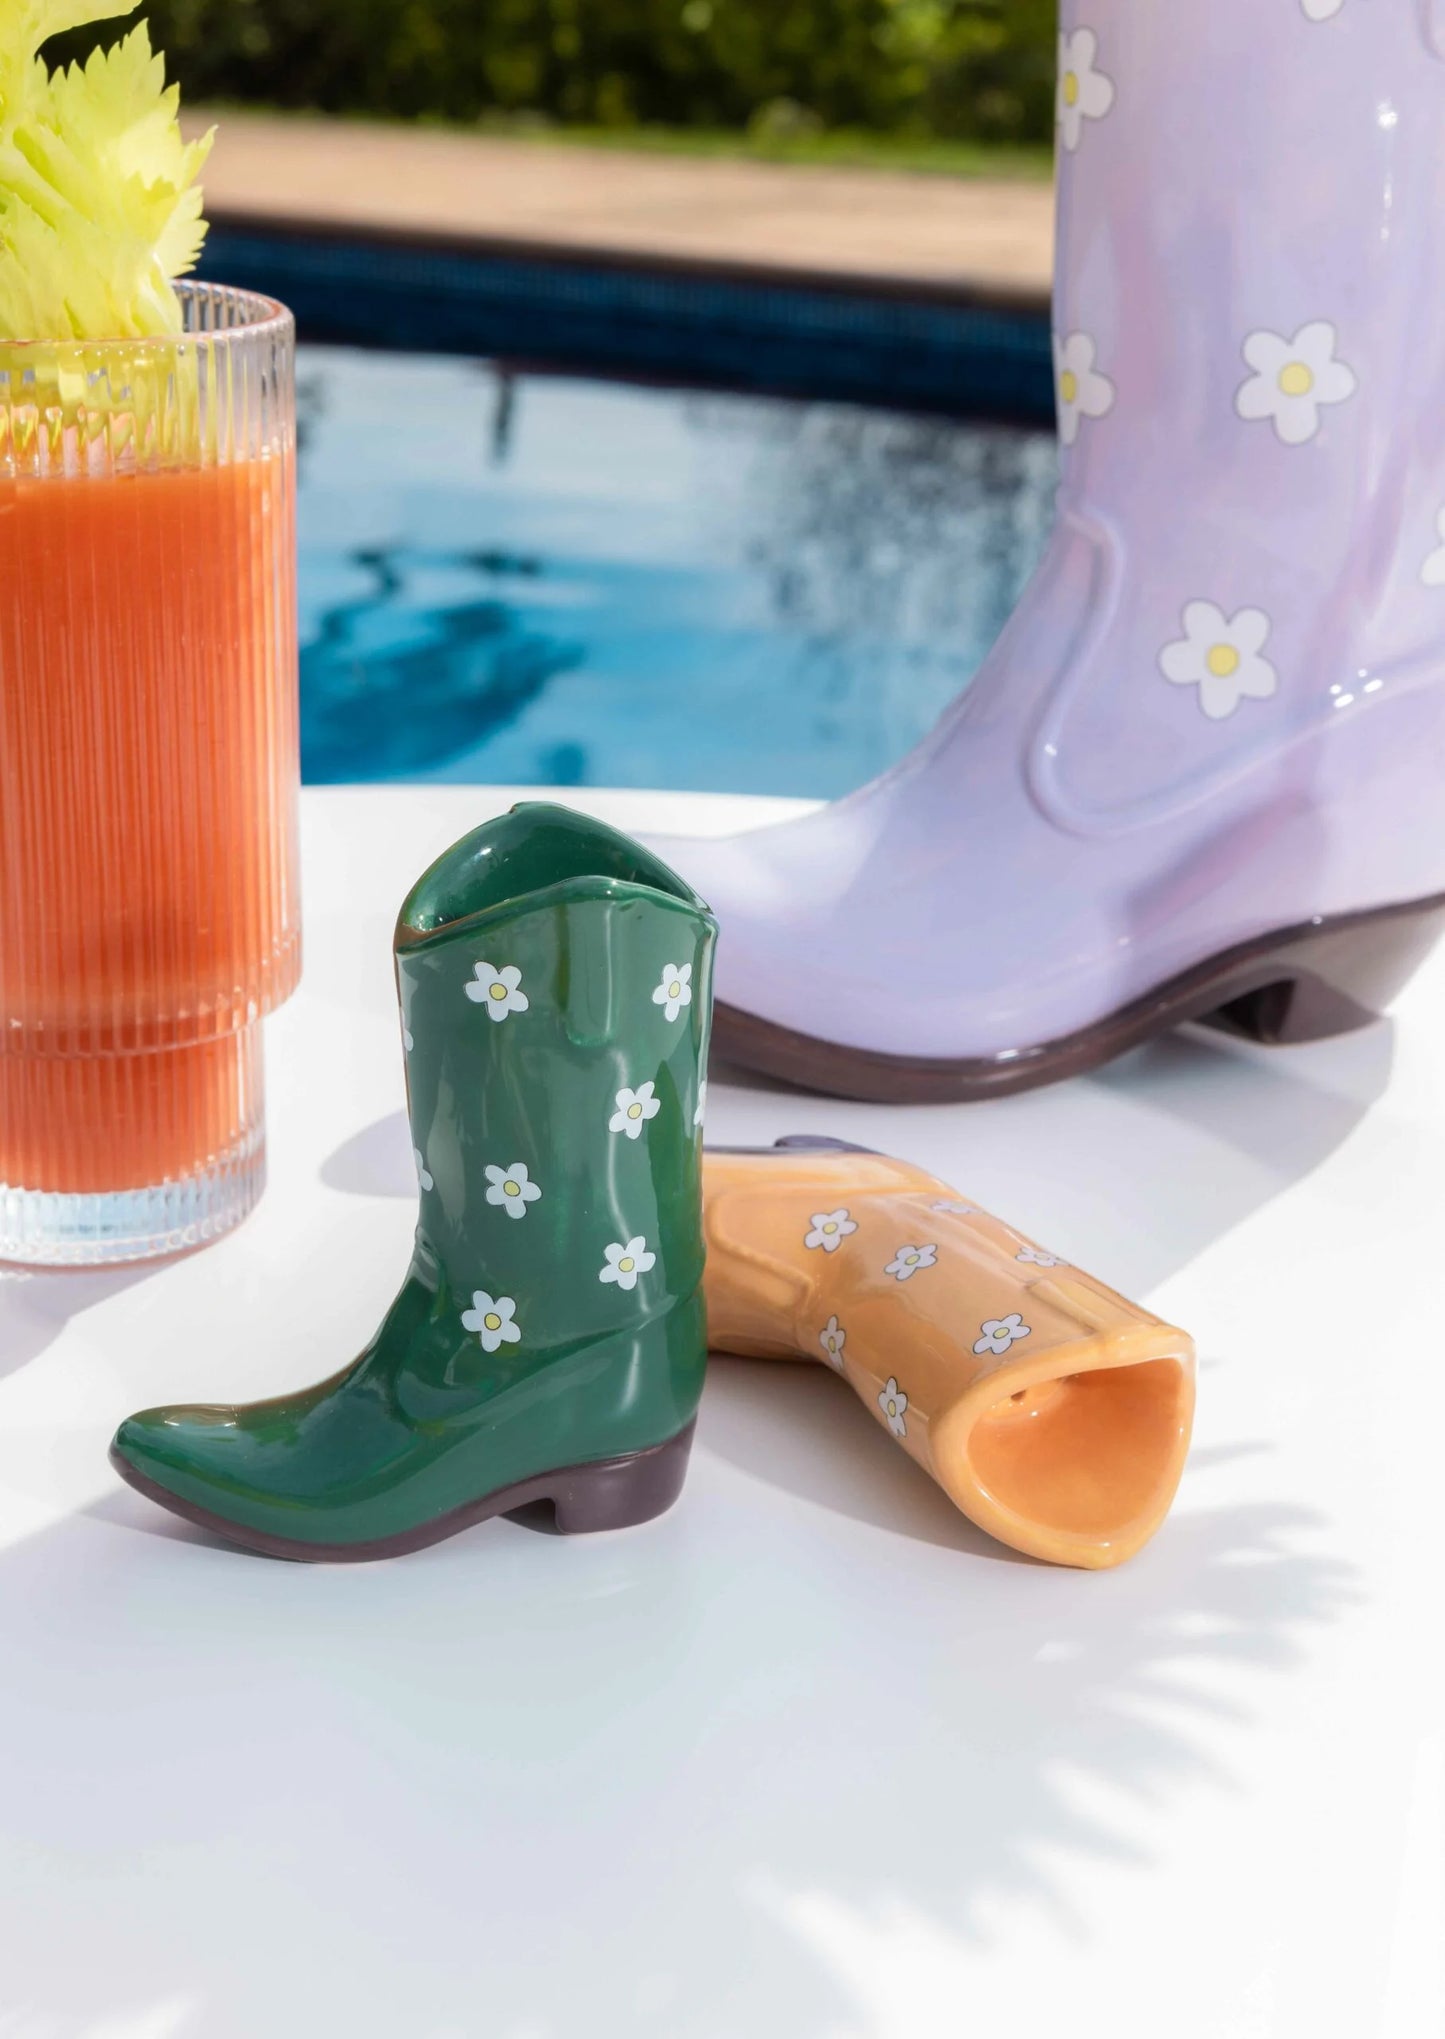 Salt & pepper shakers - cowboy boots | Doiydesign